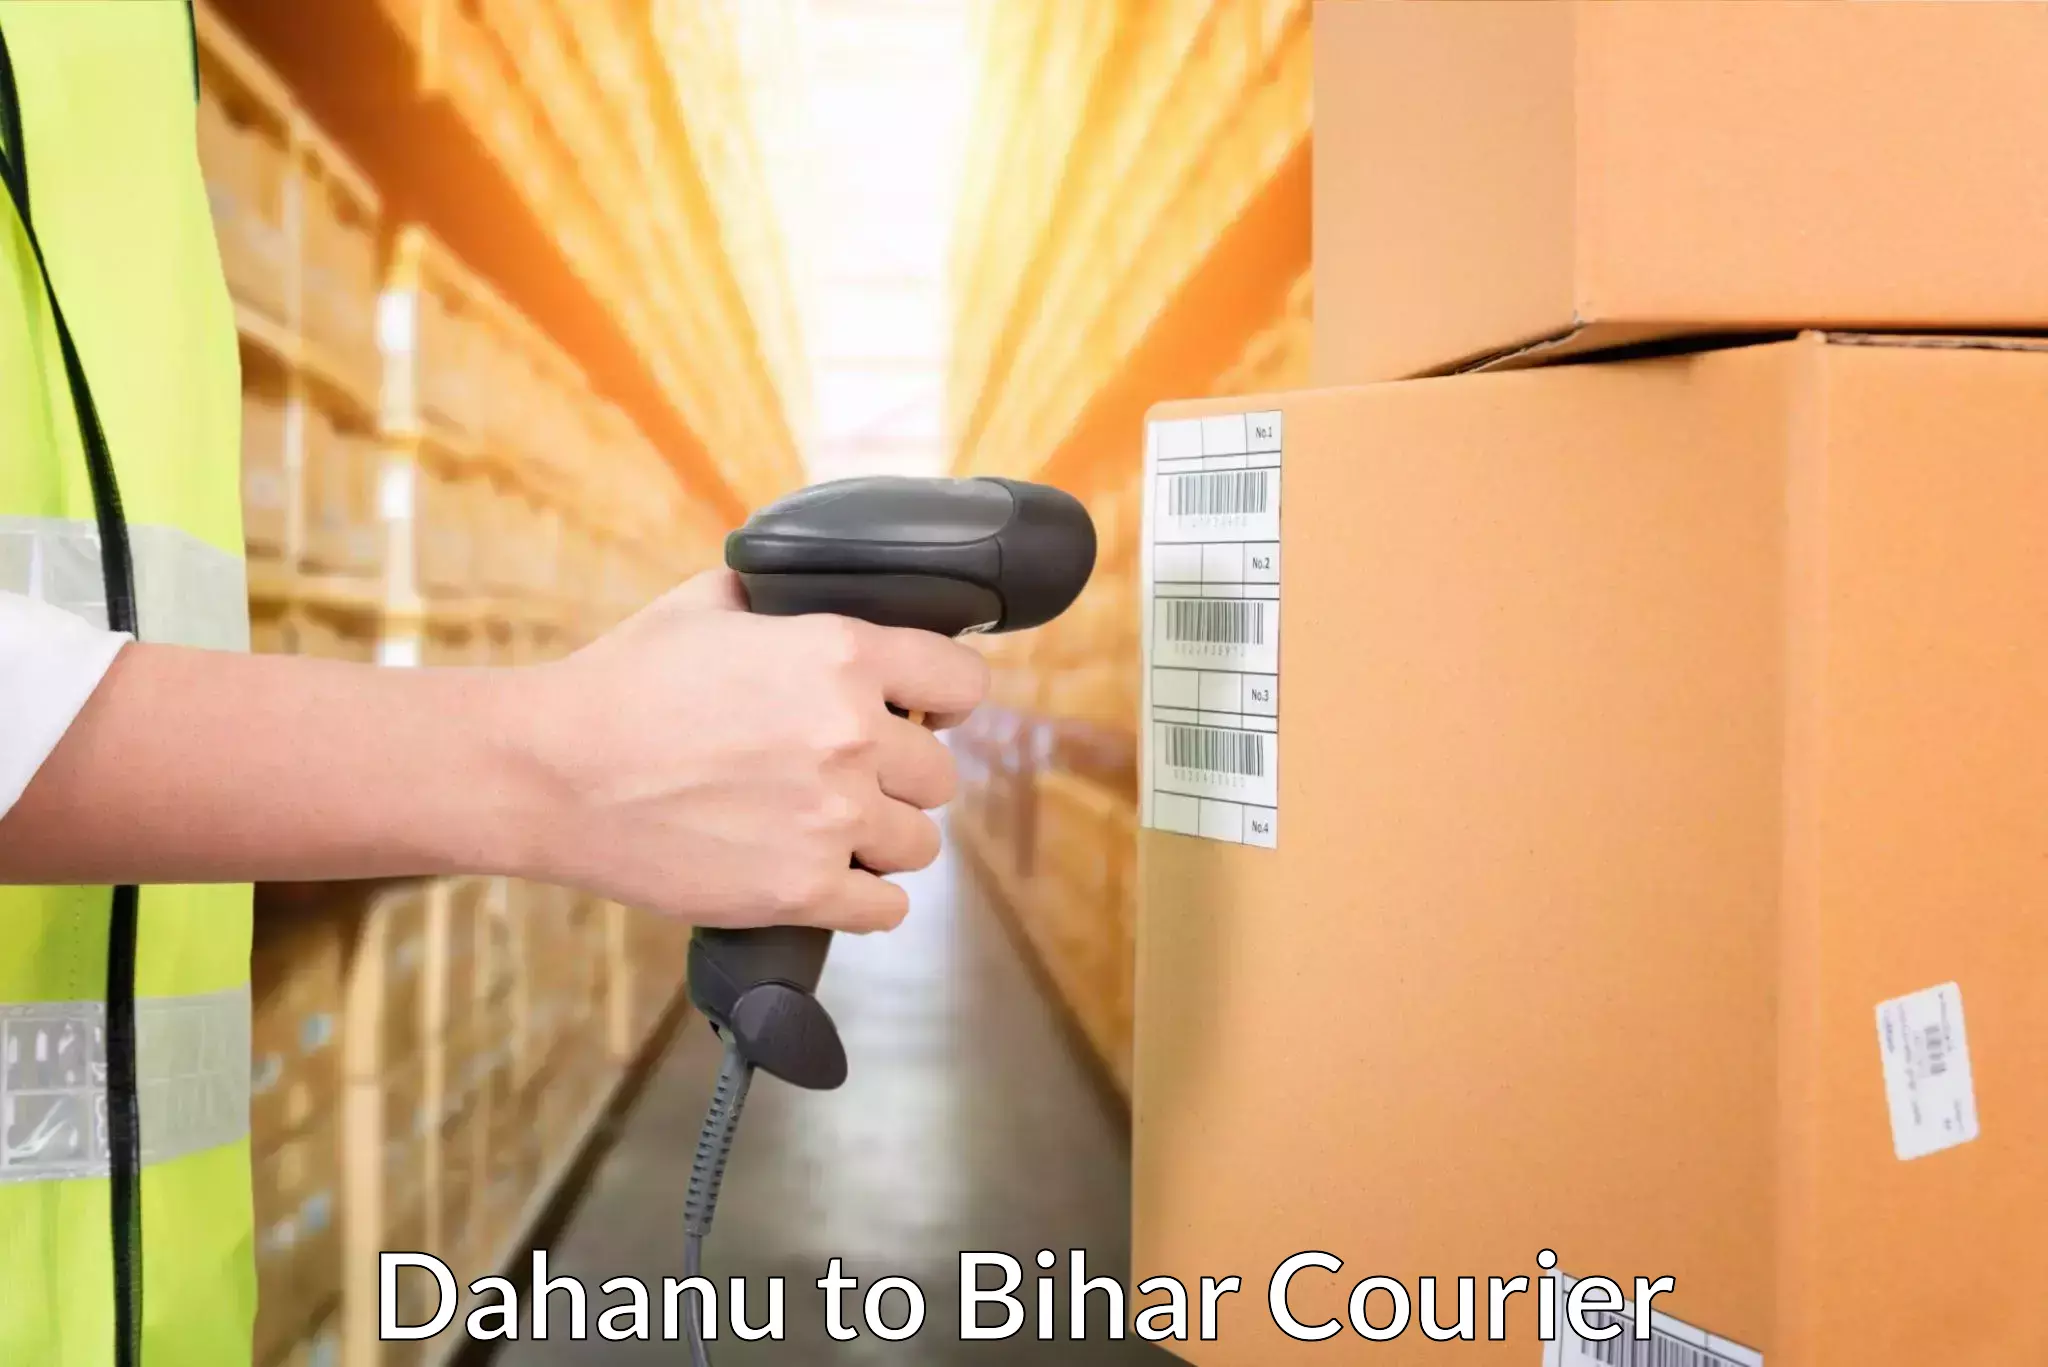 High-priority parcel service Dahanu to Bihar